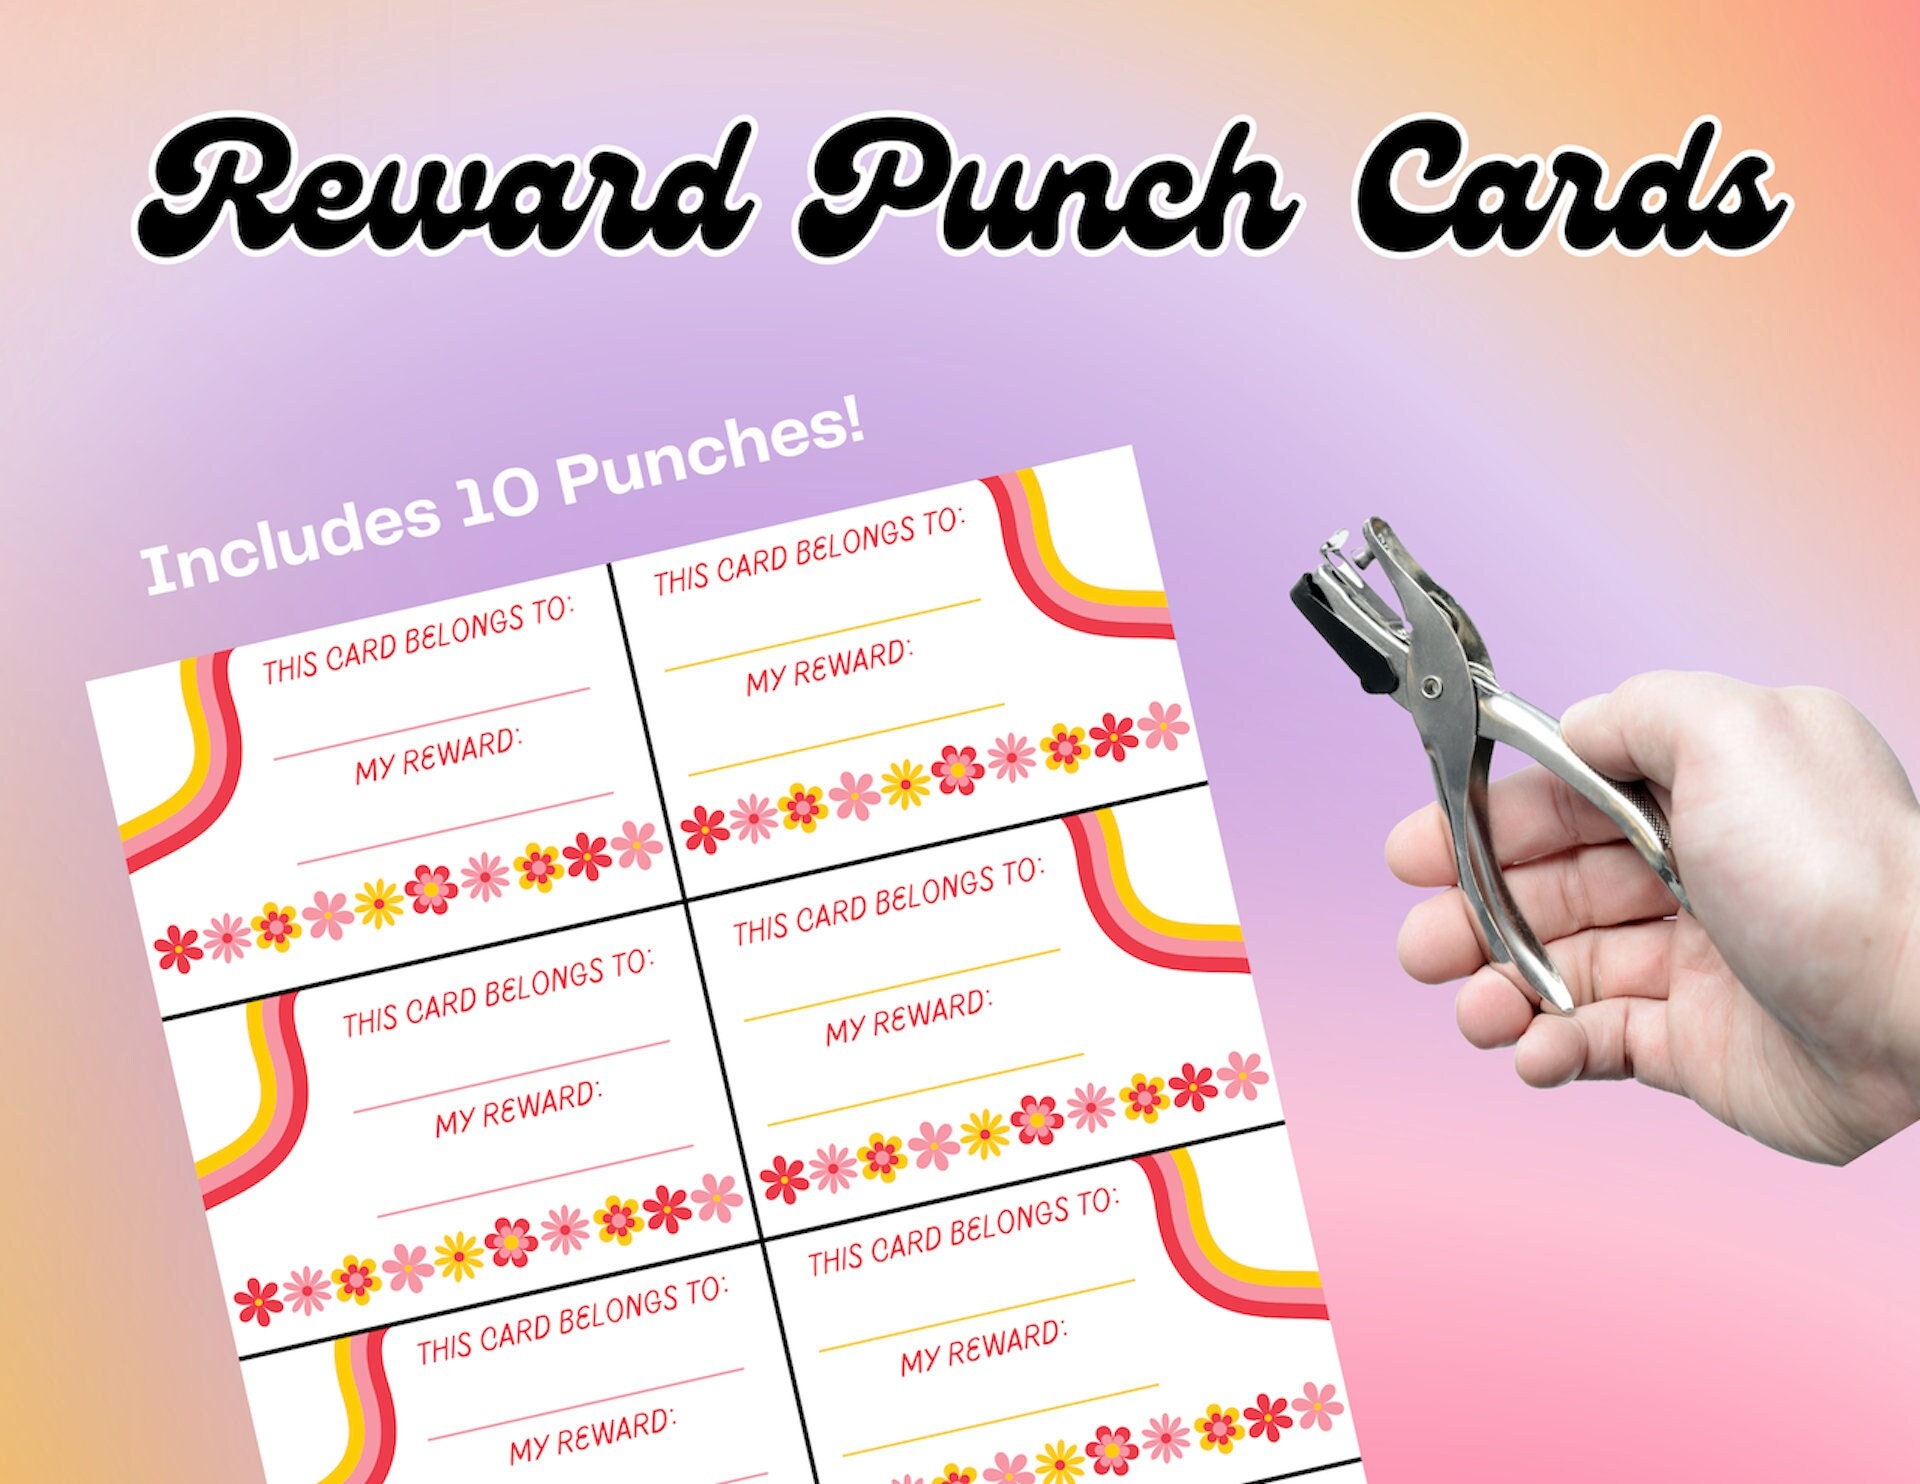 DIY Editable Reward Punch Cards, Templates, Add a School Logo or